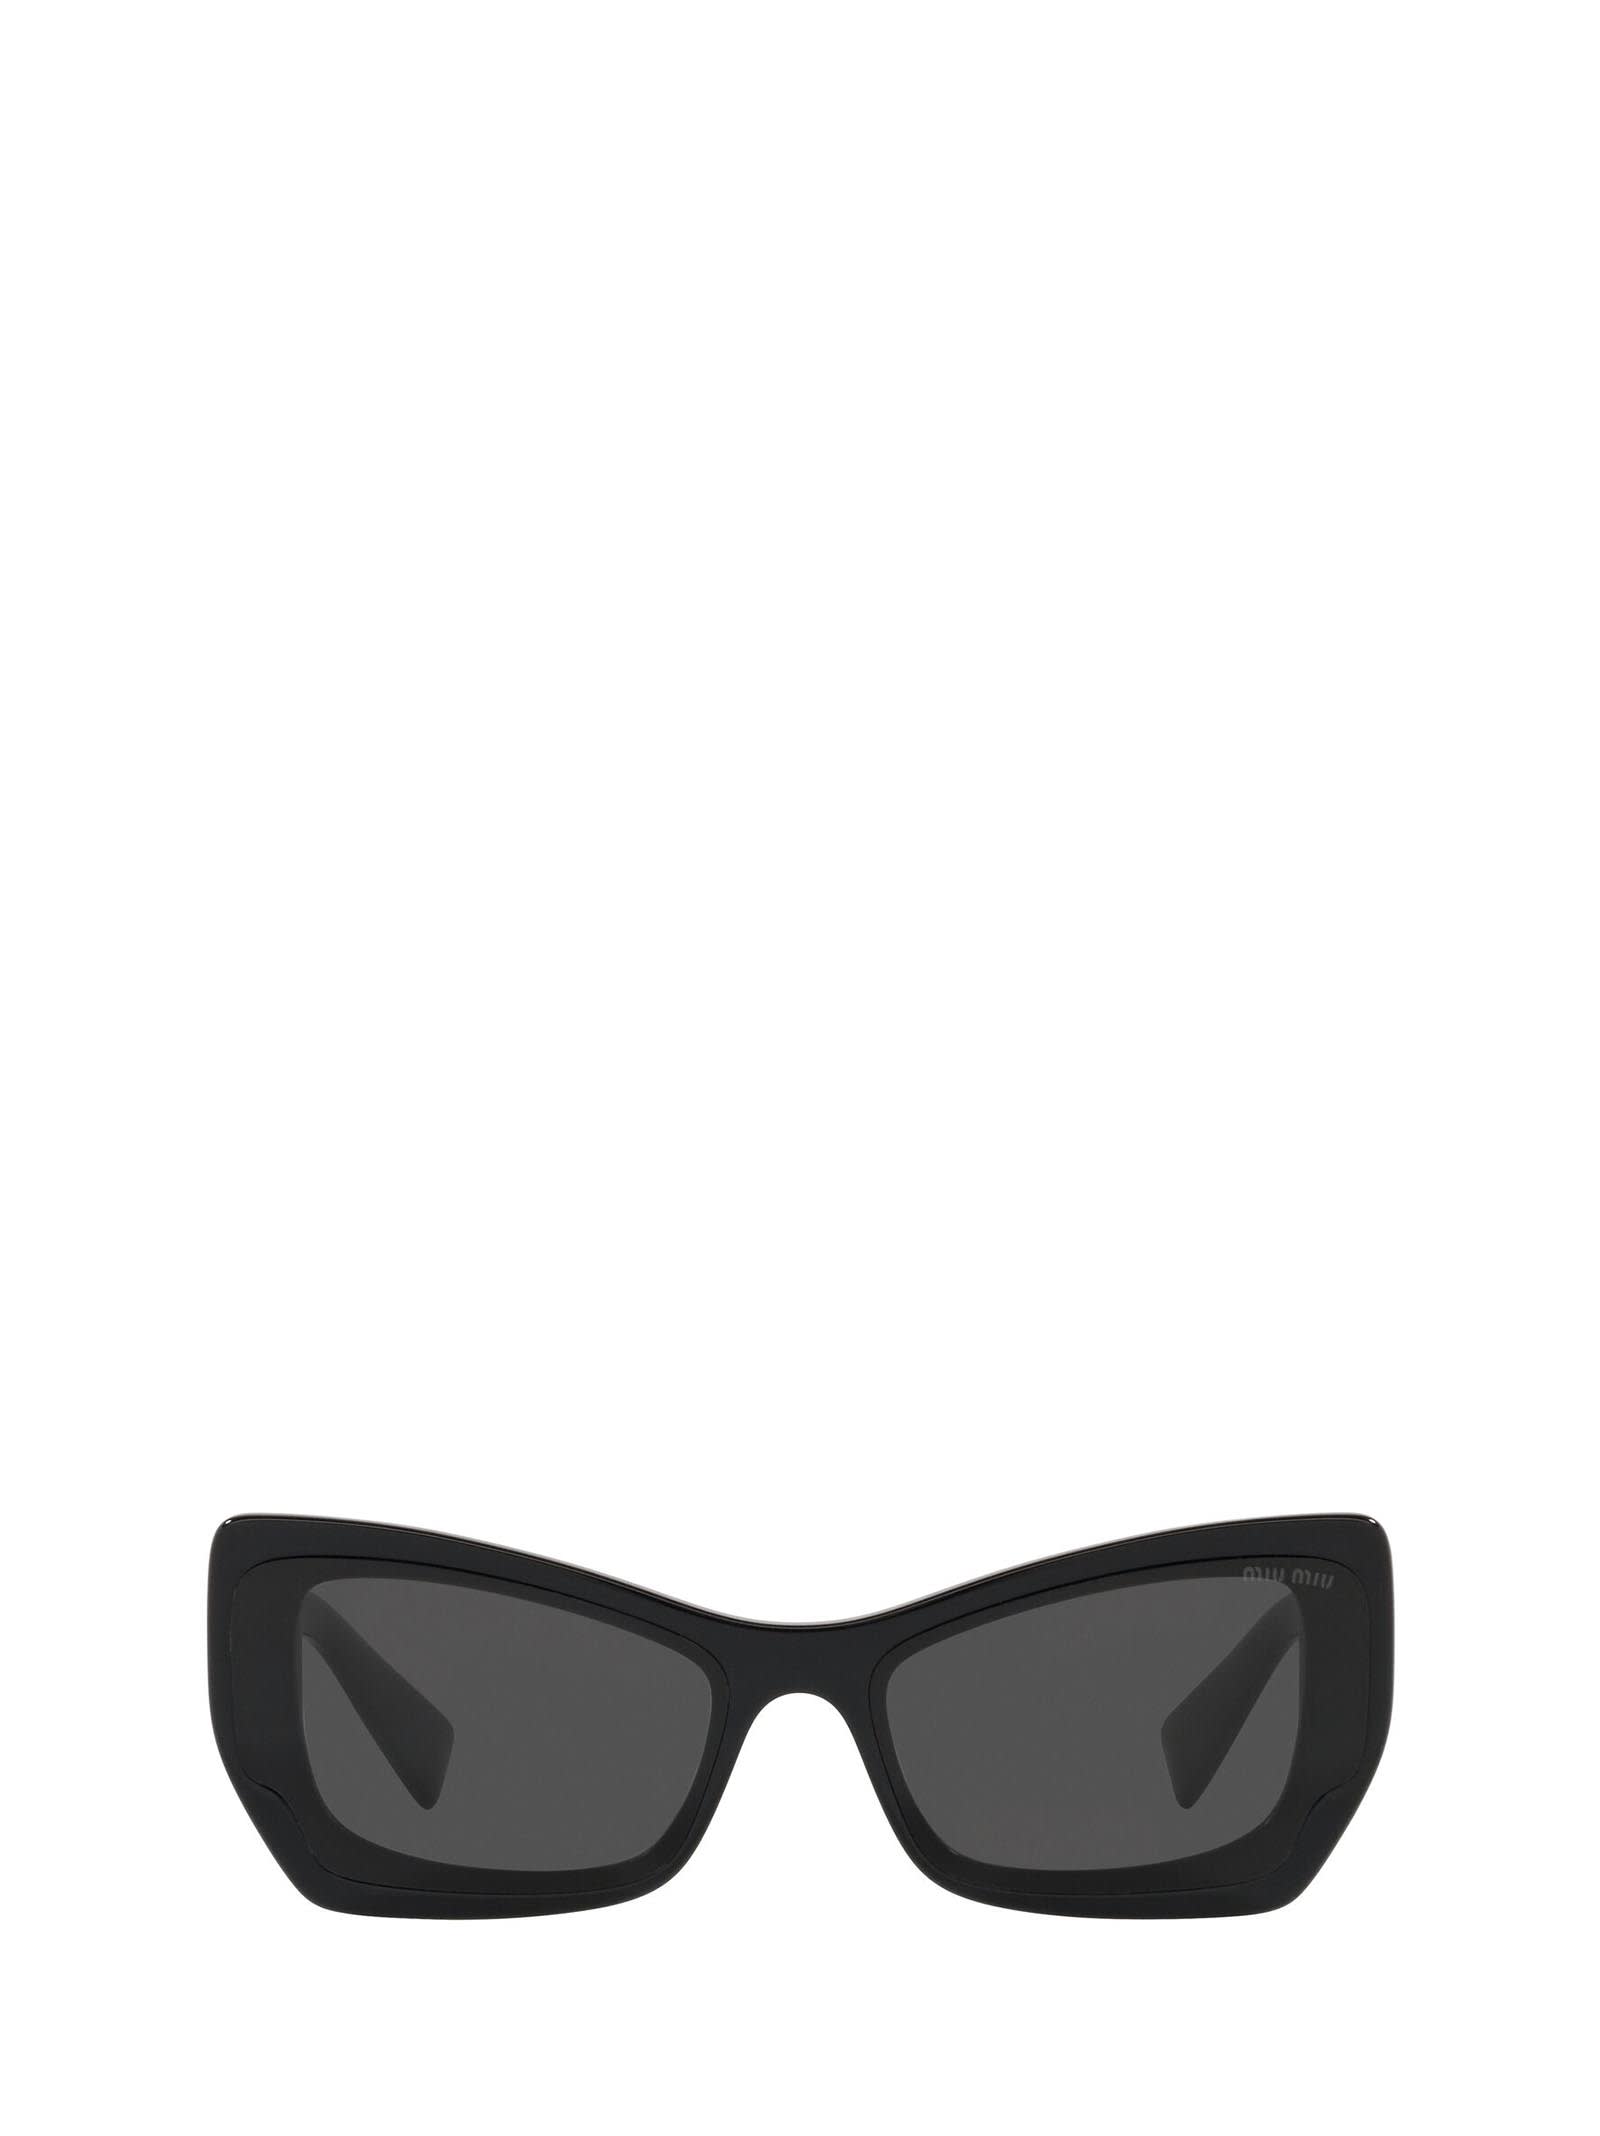 Miu Miu Eyewear Miu Miu Mu 07xs Crystal Black Sunglasses